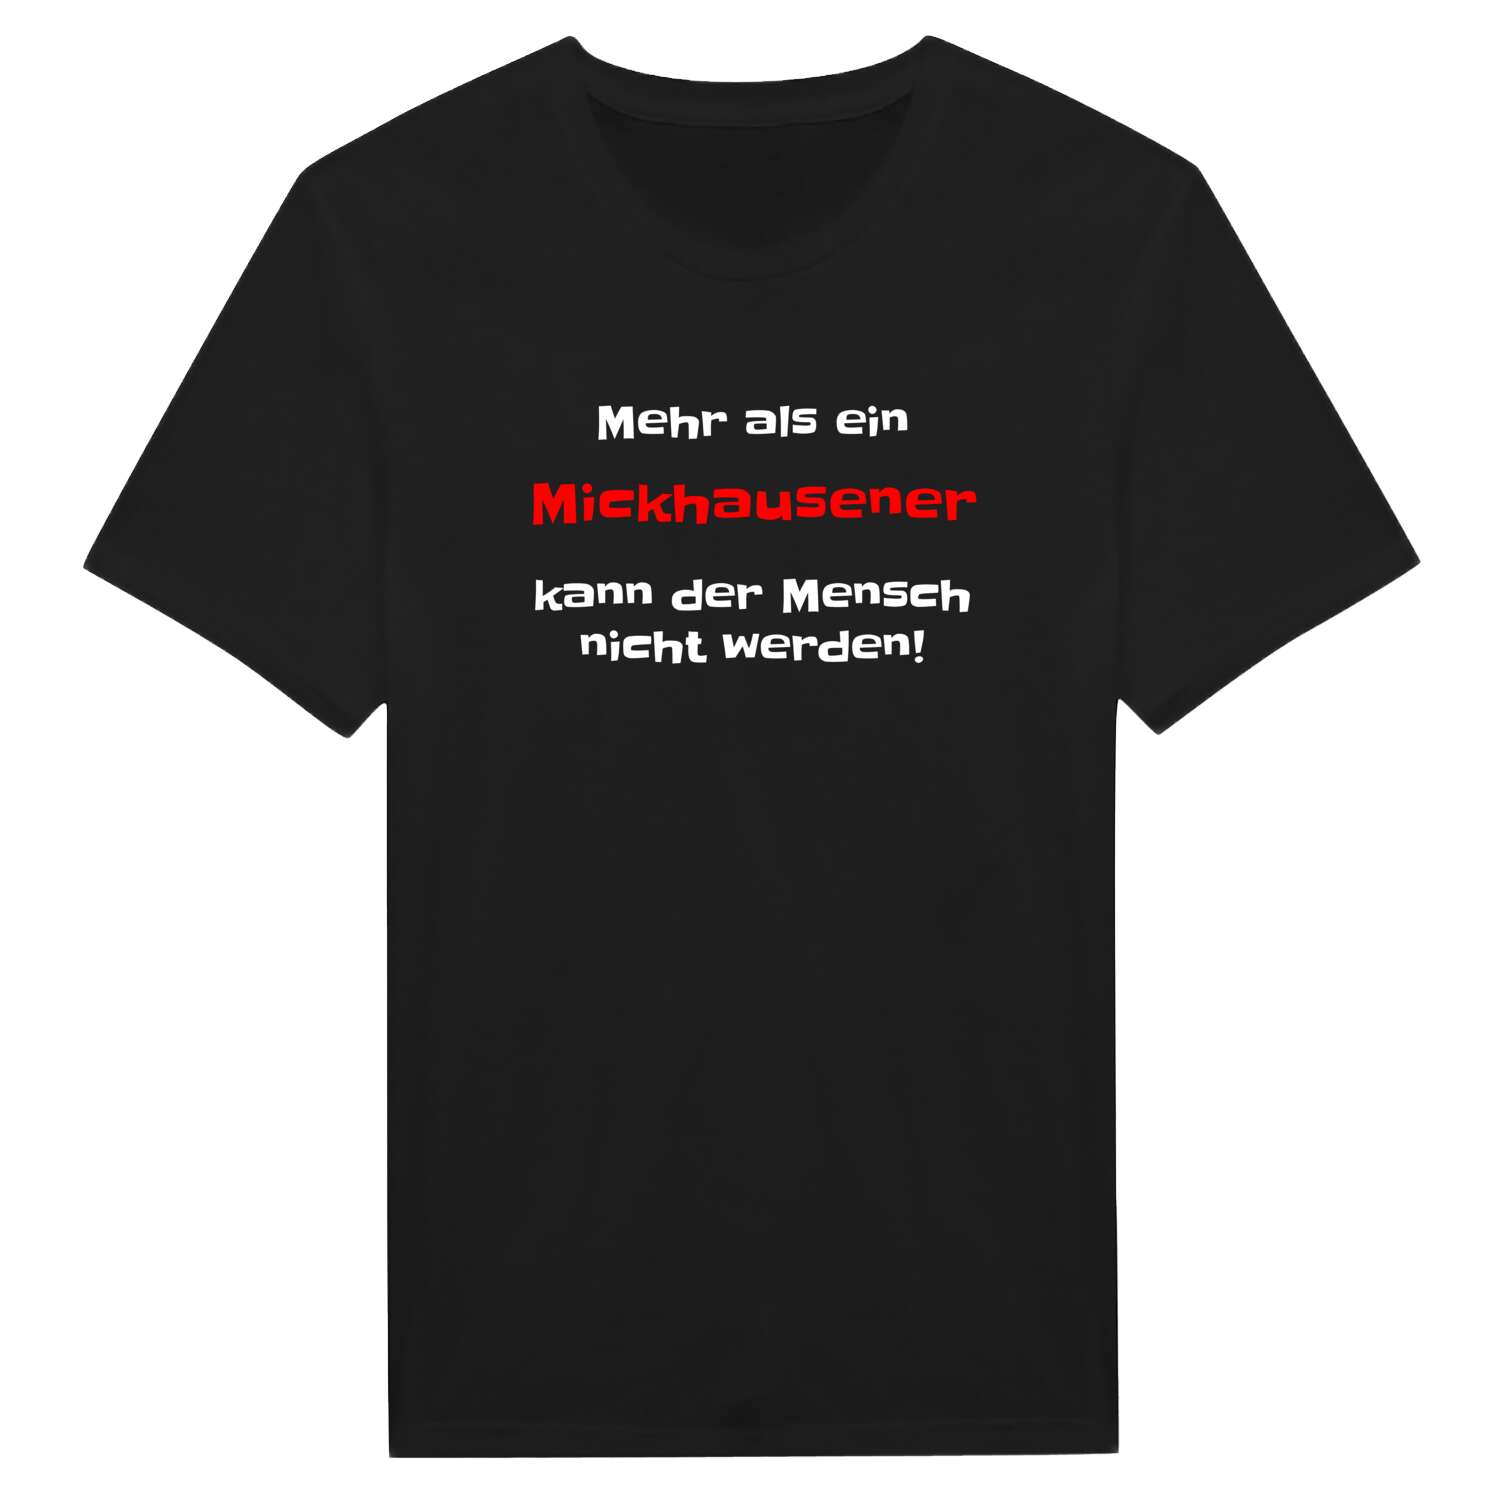 Mickhausen T-Shirt »Mehr als ein«